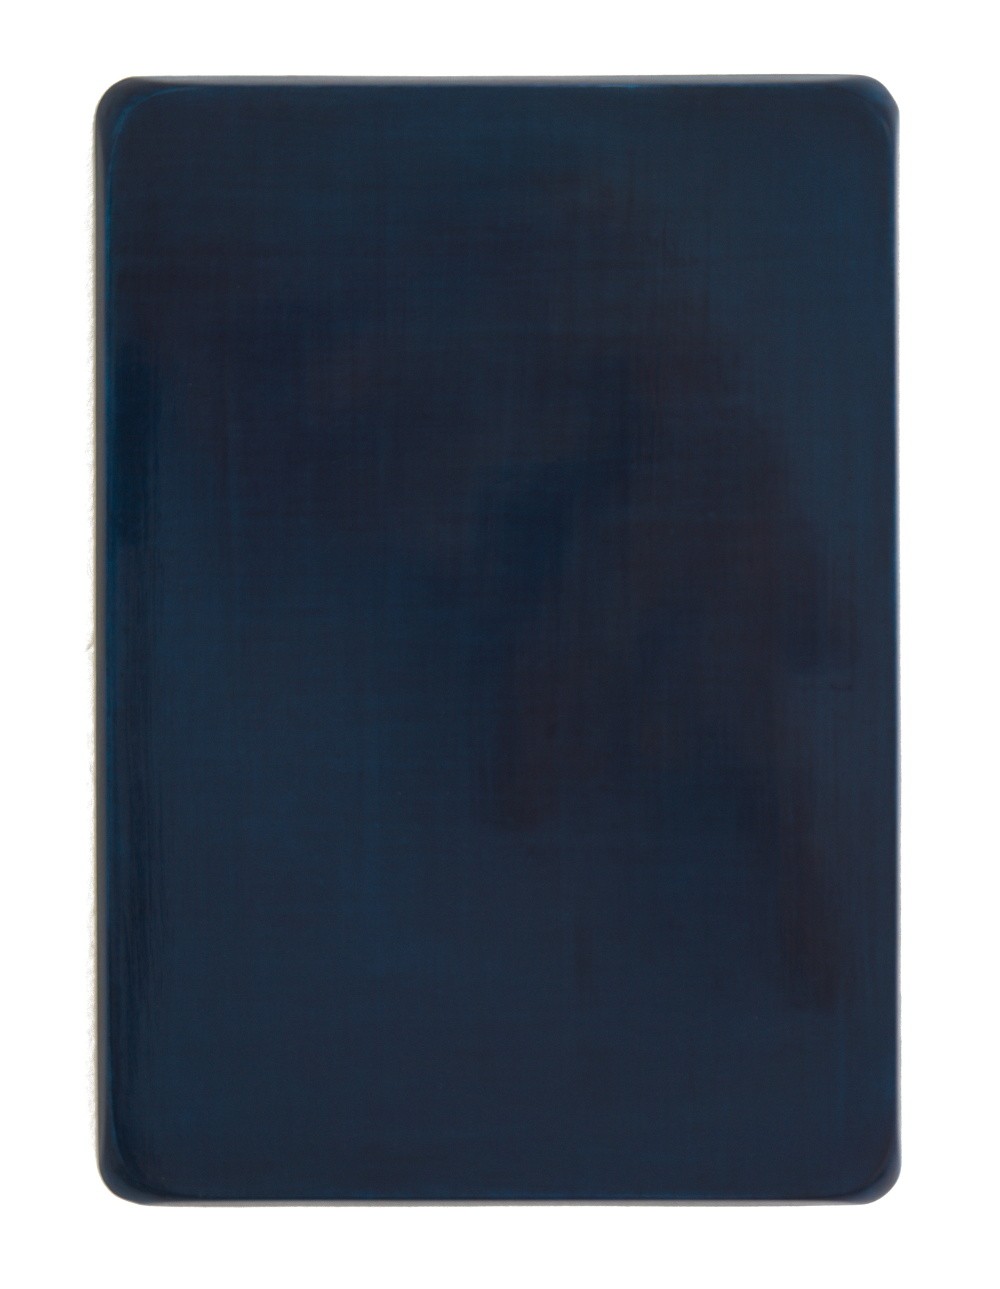 o.T. / Neutralgrau, Helioceolinblau, Aquarell auf Gips und Medium, 35 x 25 cm, 2008